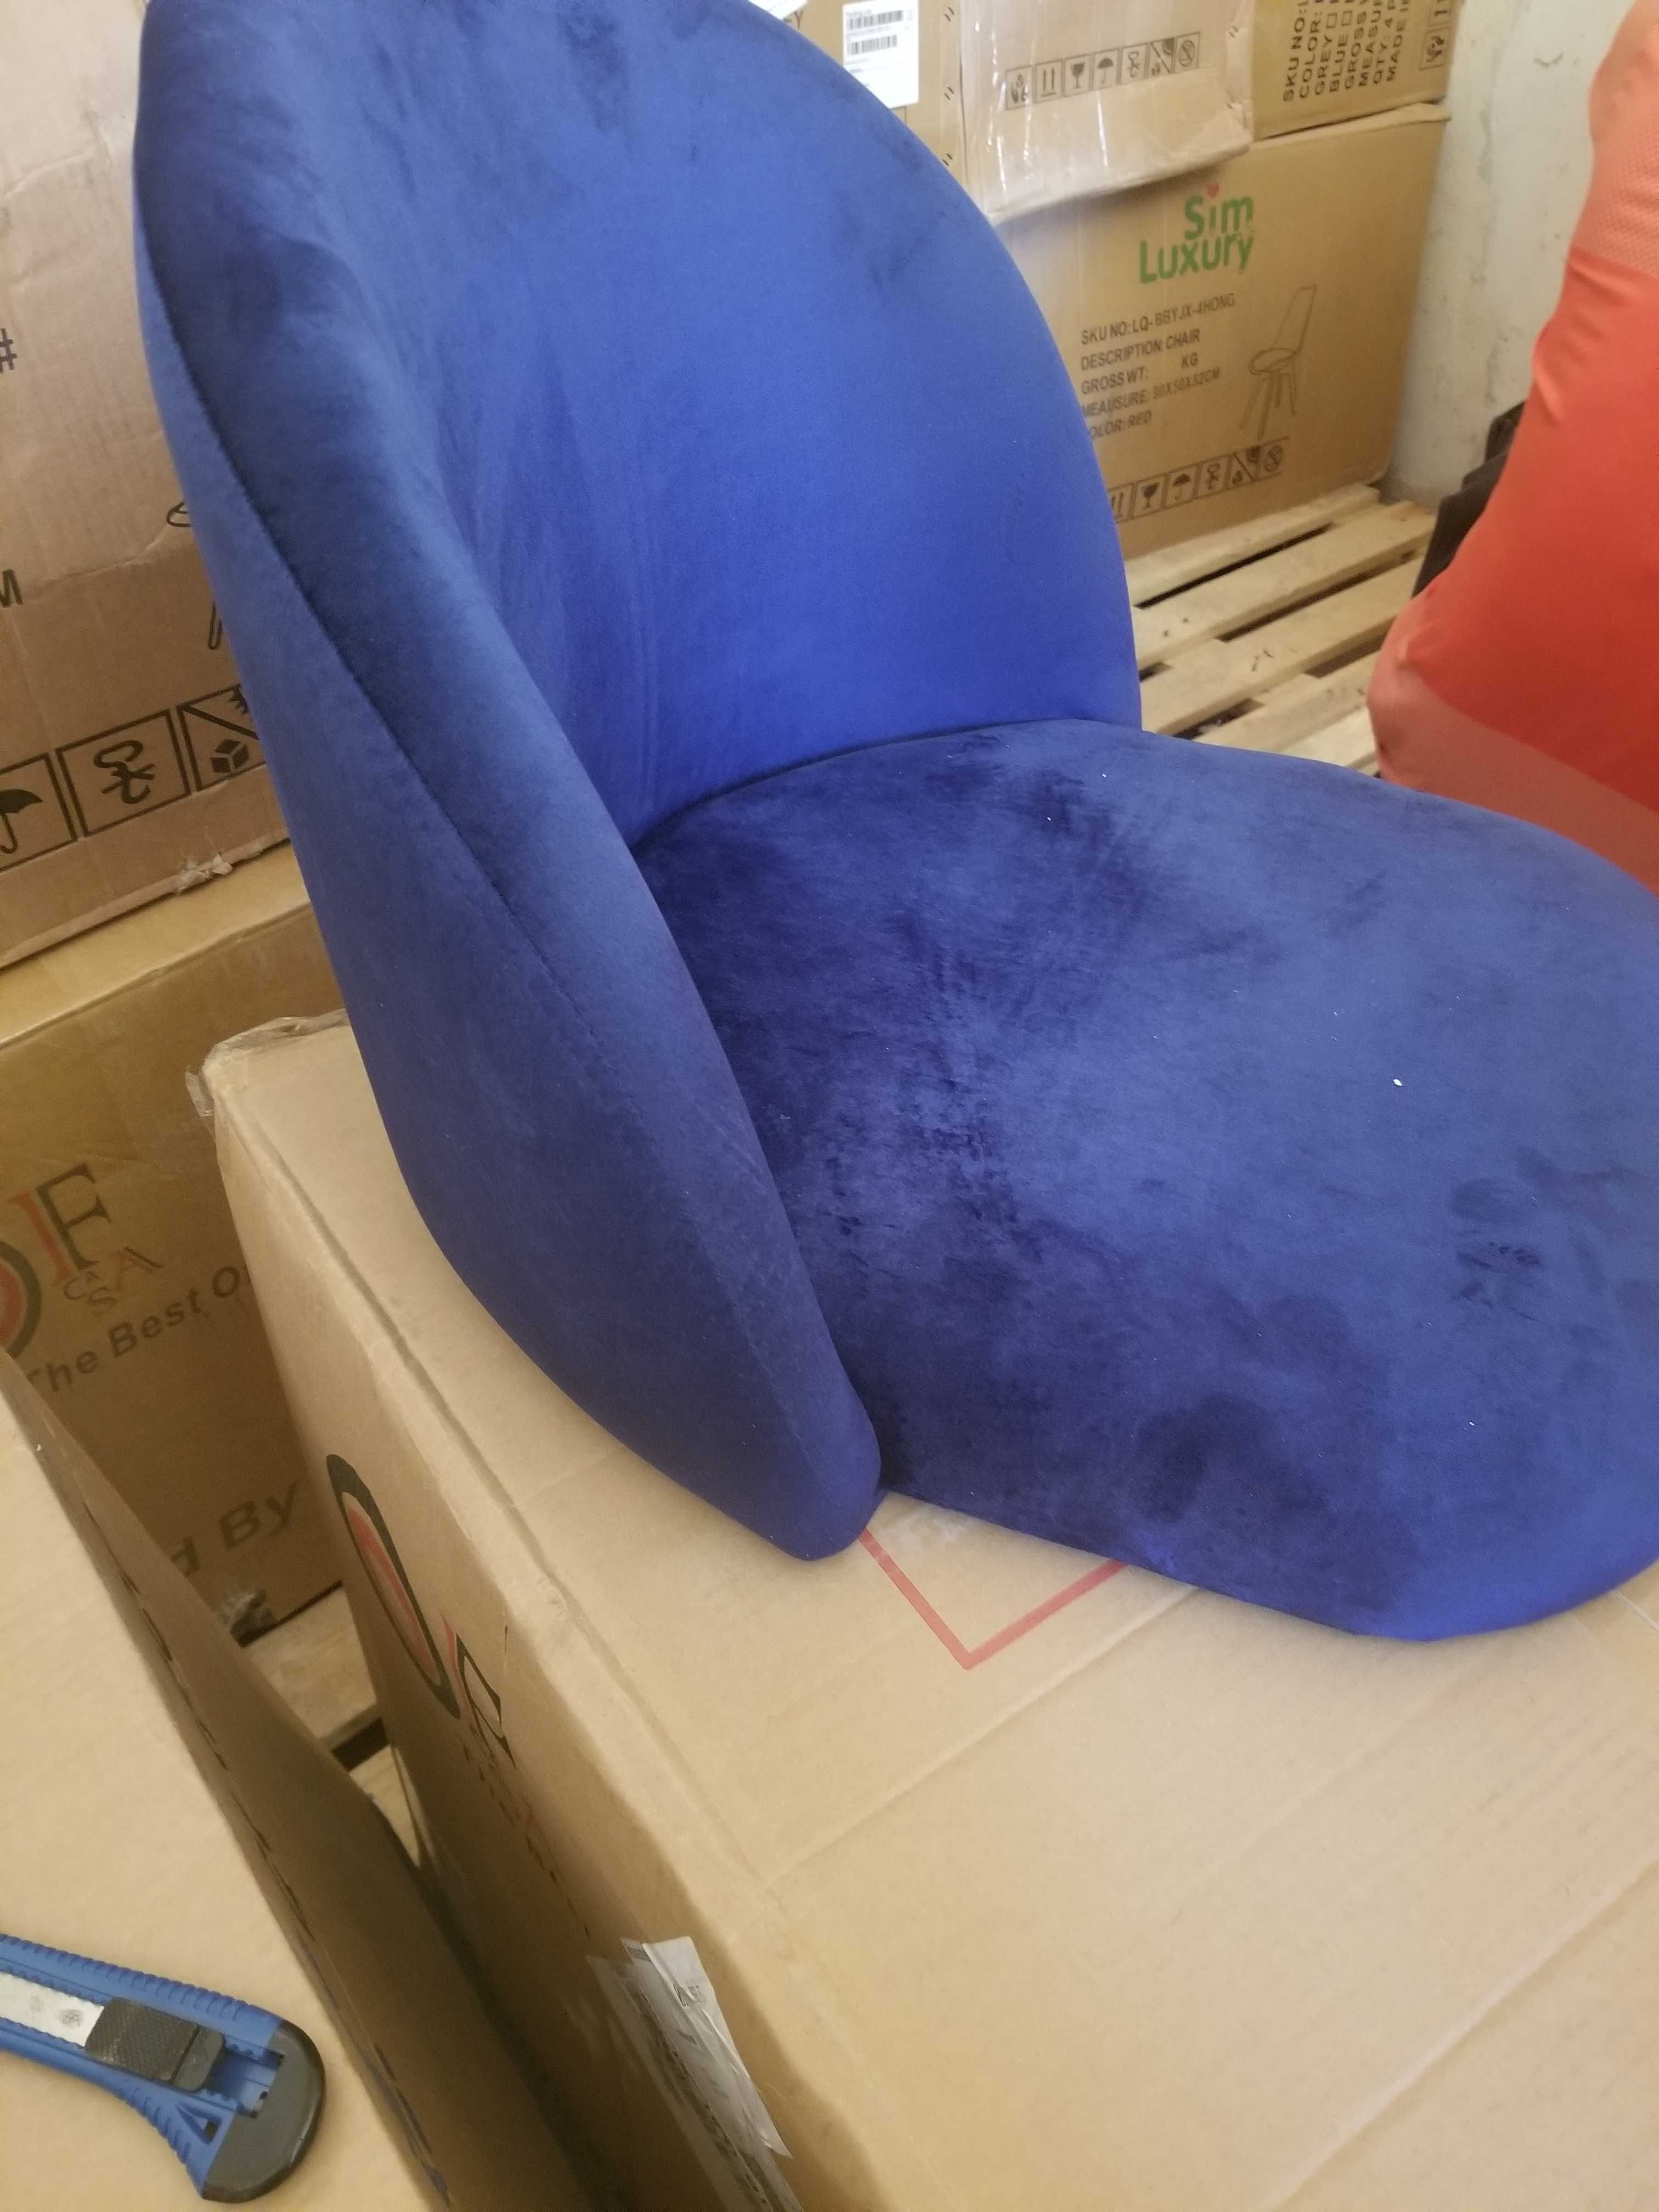 Трапезен стол / столове с мека седалка и облегалка МОДЕЛ 102